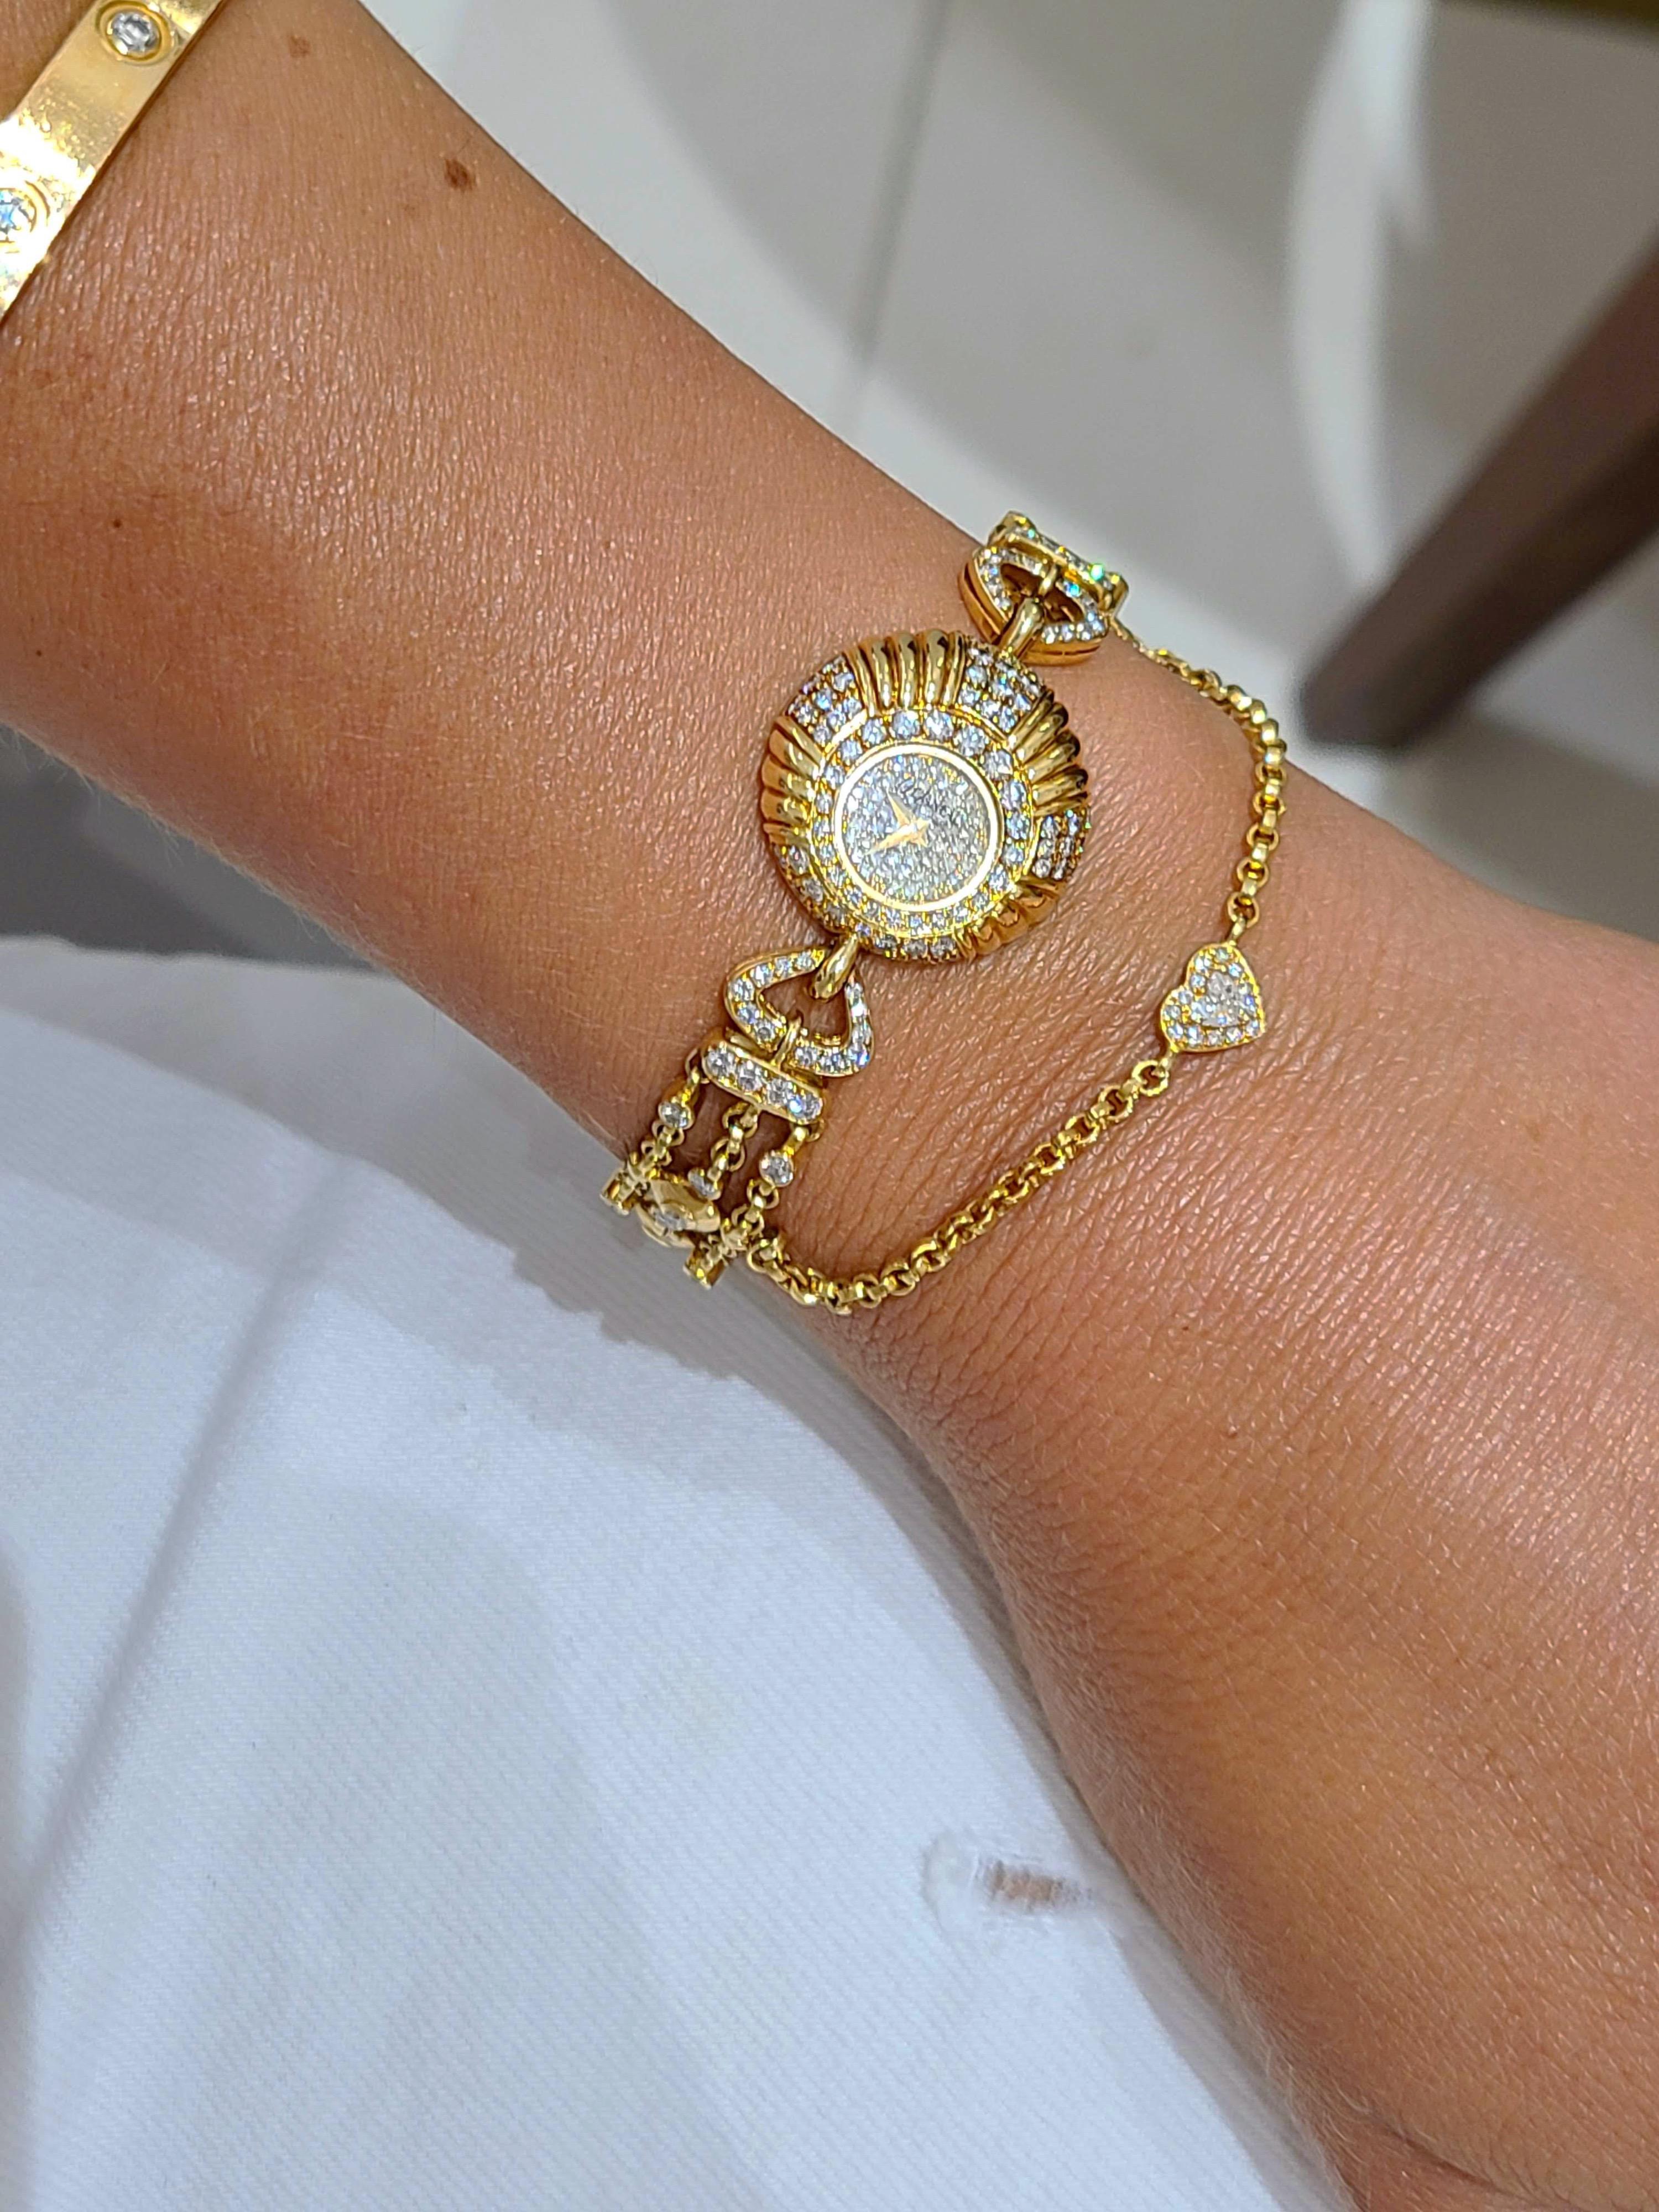 DeLaneau wurde 1949 von einer Frau in der Schweiz gegründet. Sie sind eine der ersten Uhrenfirmen, die ihre gesamte Kollektion den Damenuhren gewidmet haben.
Das Zifferblatt dieser Uhr aus 18 Karat Gelbgold ist mit eingefassten Diamanten besetzt.